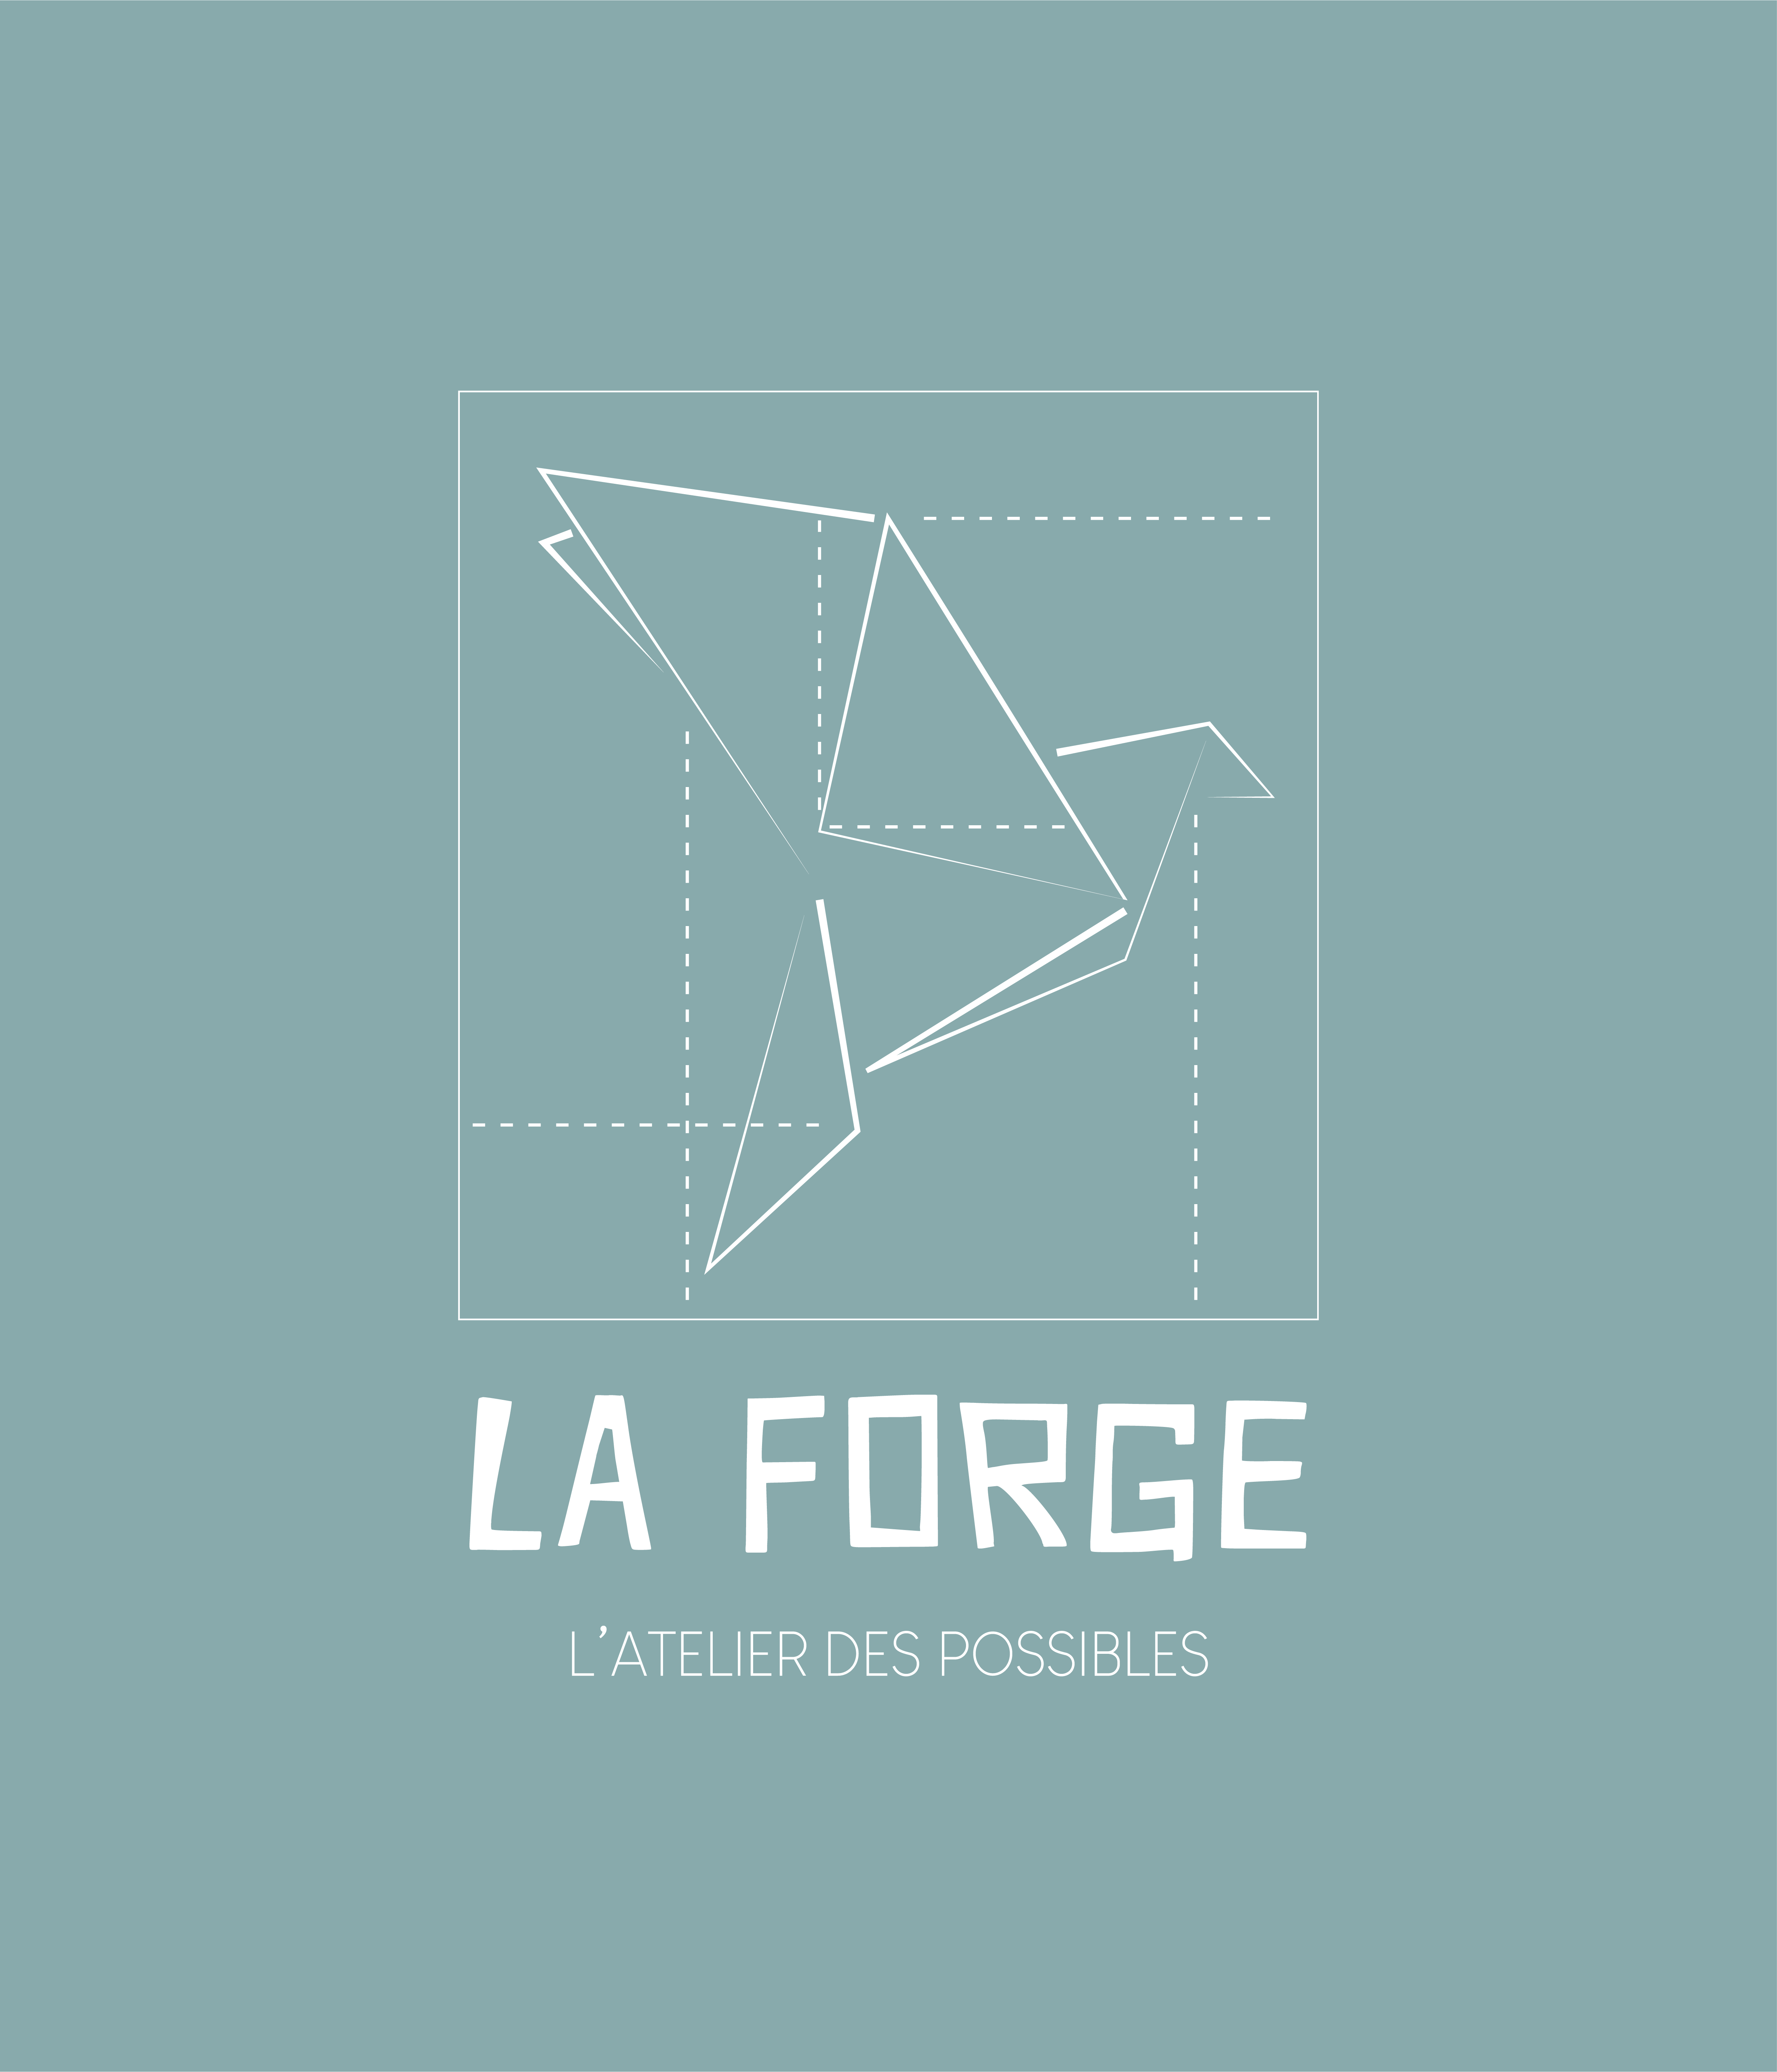 Group-La Forge visuel la forge bleu givre RVB.png